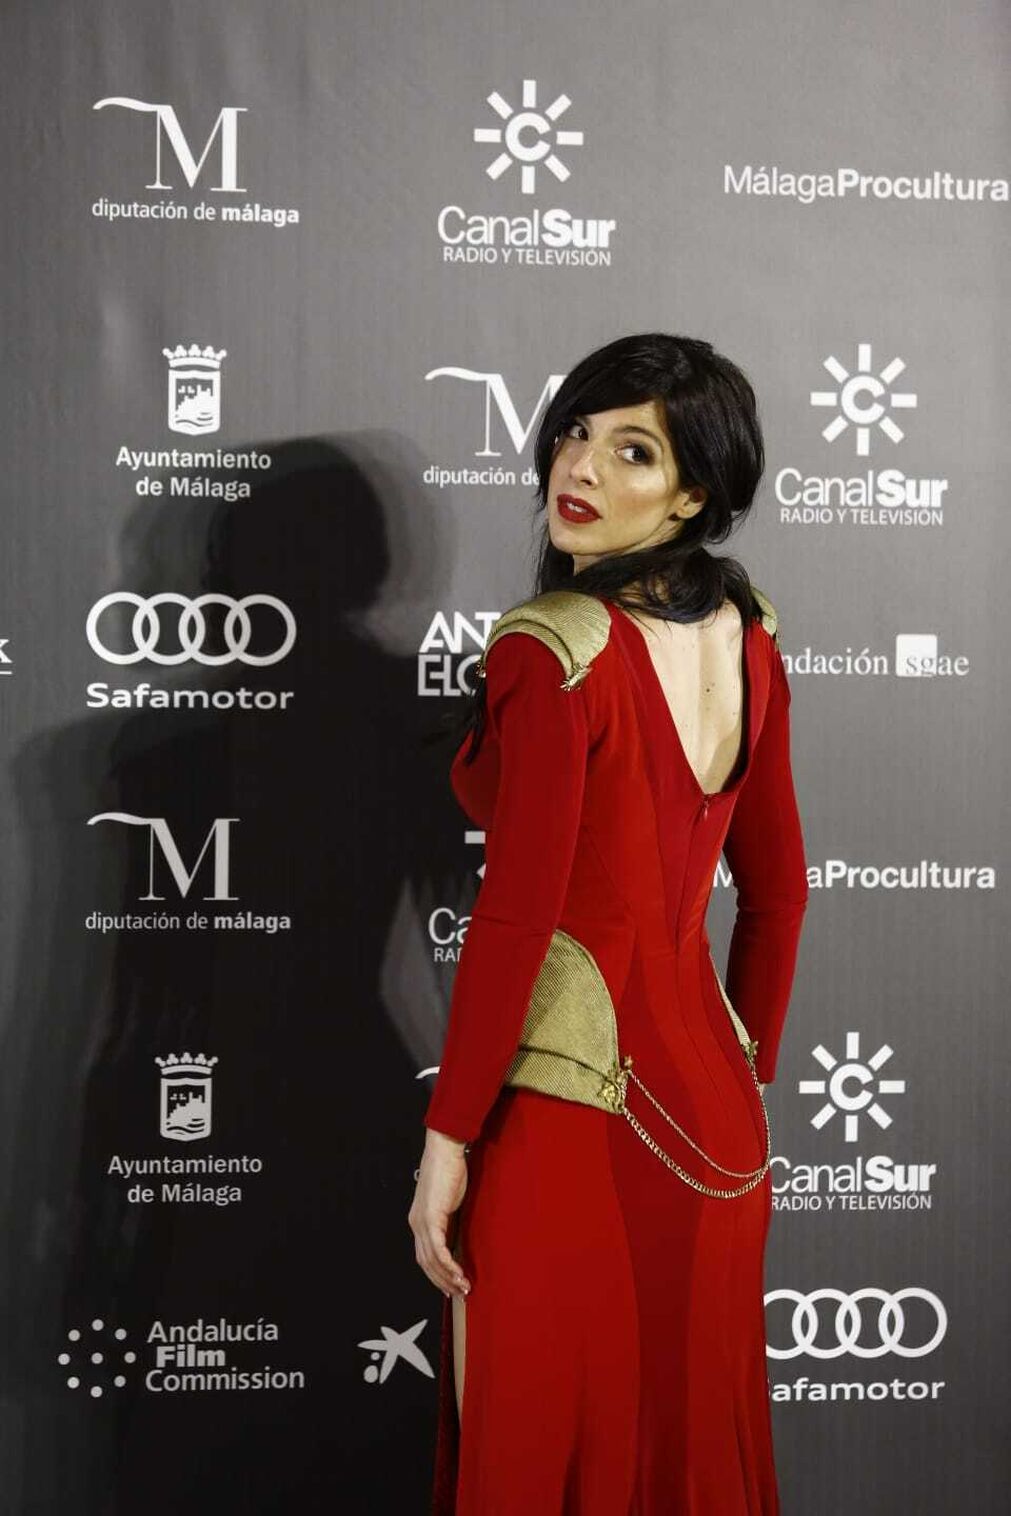 Las fotos de la alfombra roja de los Premios Carmen del cine andaluz, en M&aacute;laga